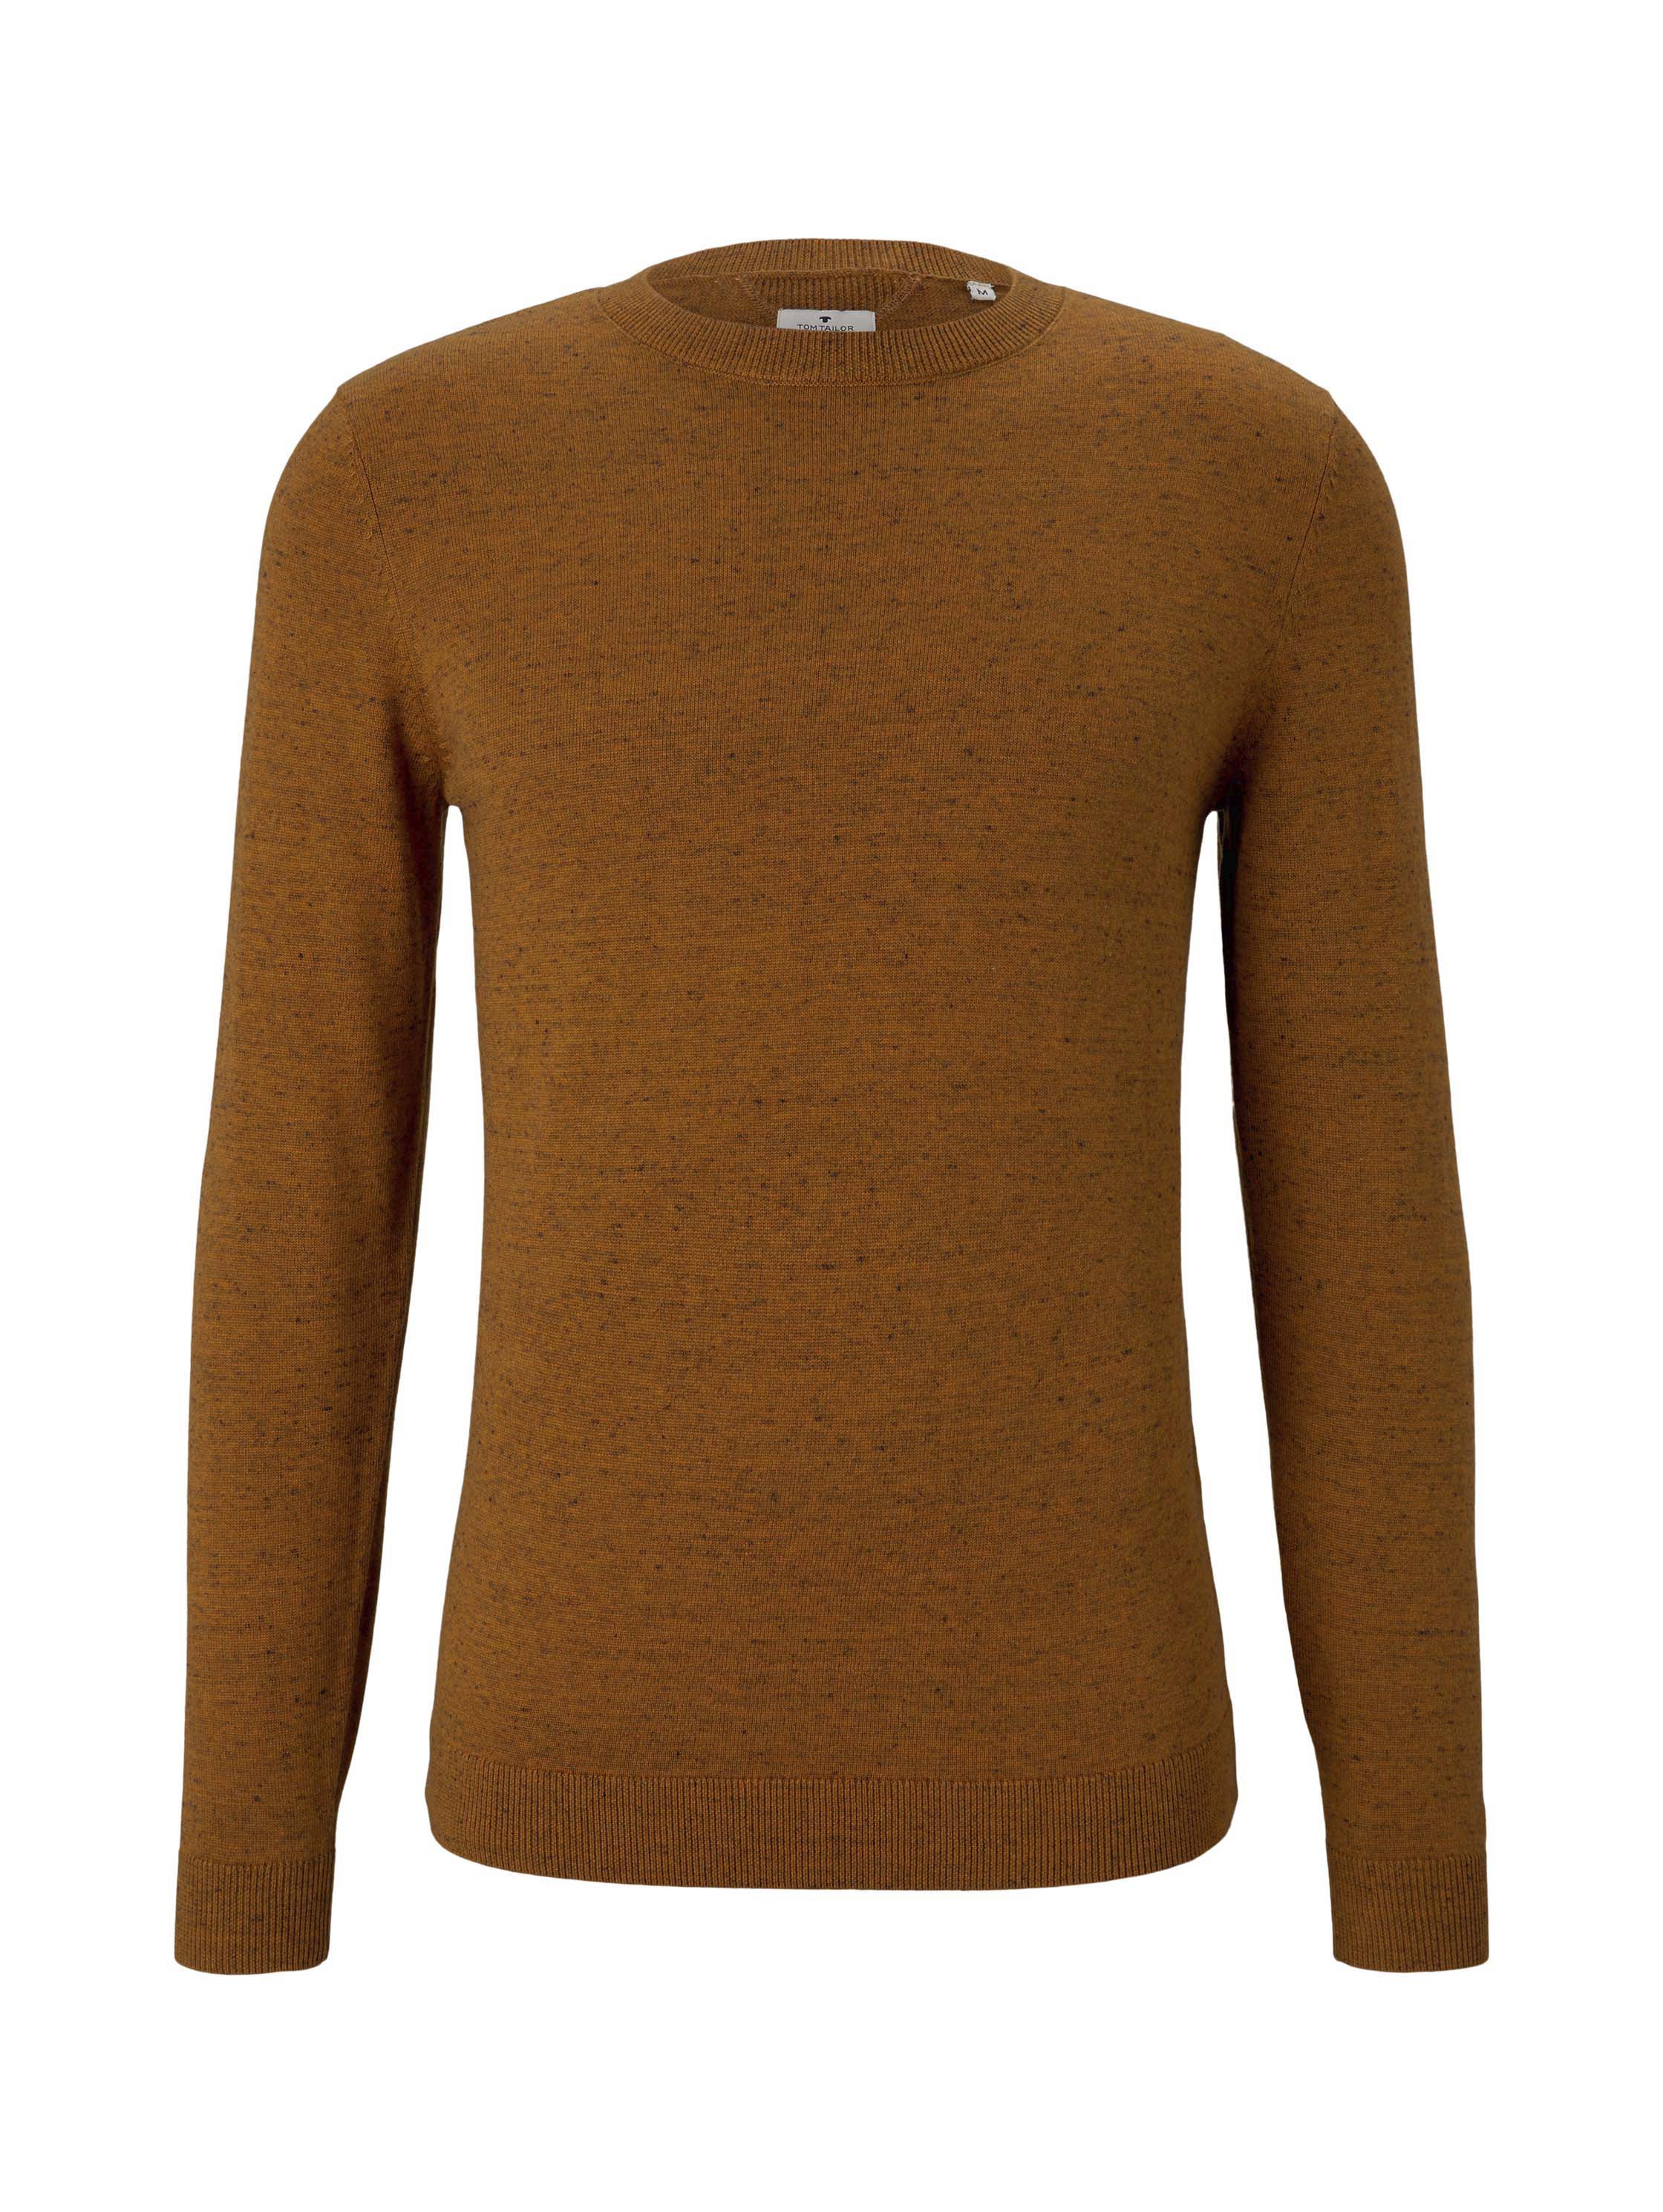 basic crew neck sweater, orange white heather yarn